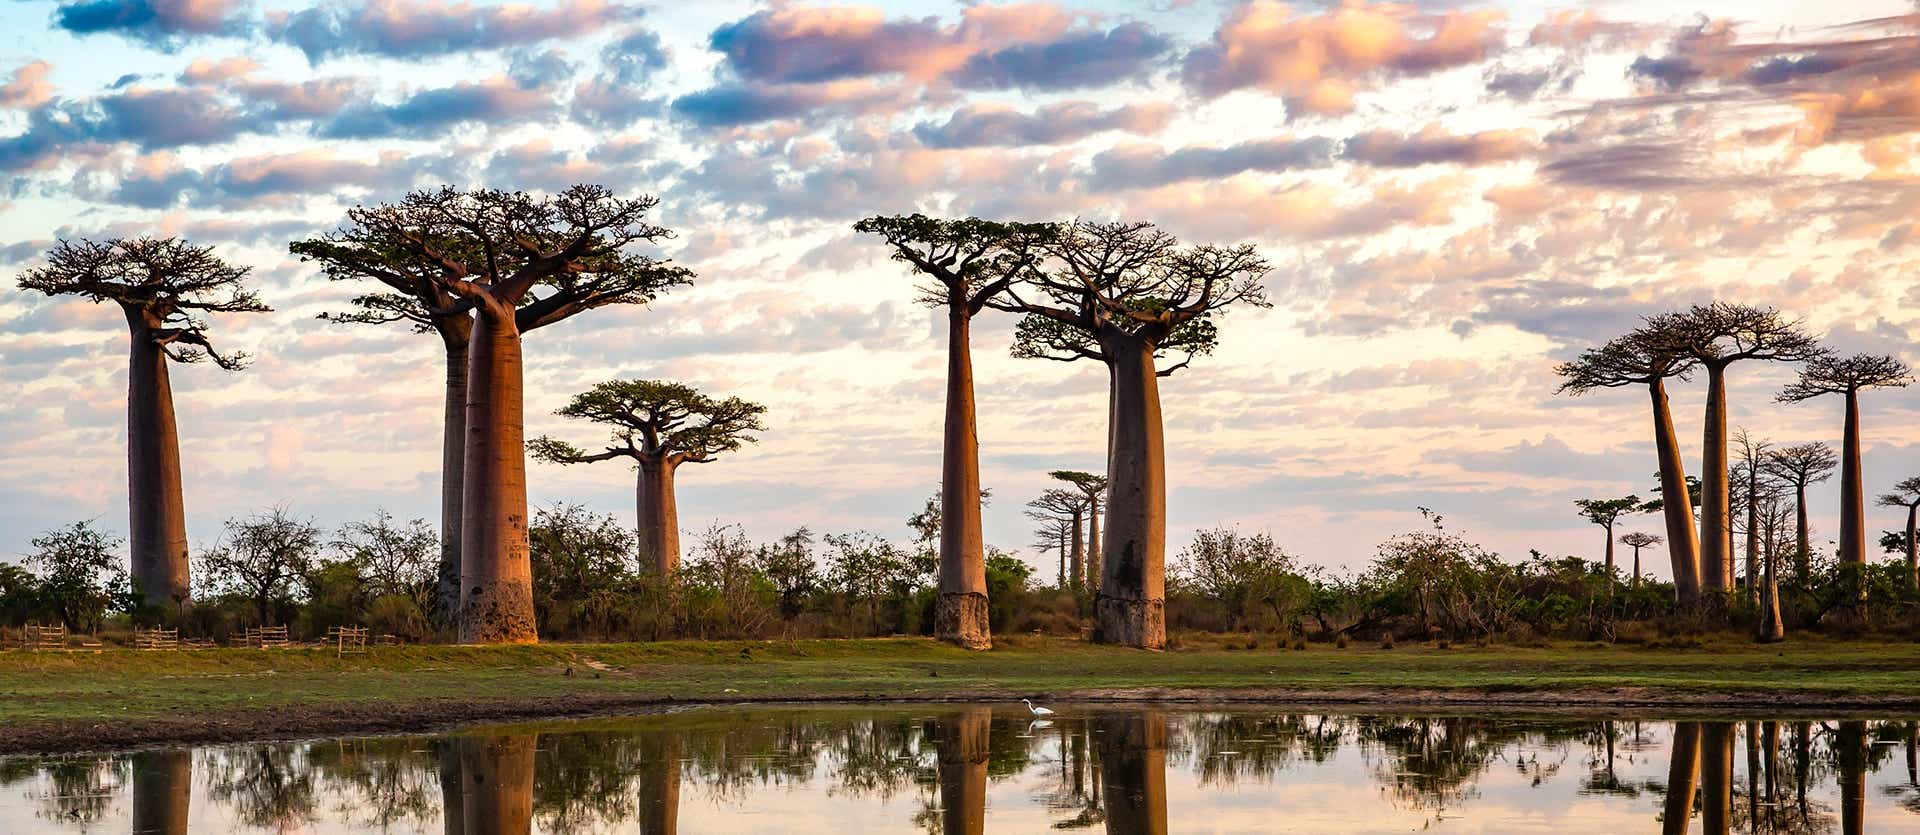 Avenue of Baobabs <span class="iconos separador"></span> Morondava <span class="iconos separador"></span> Madagascar